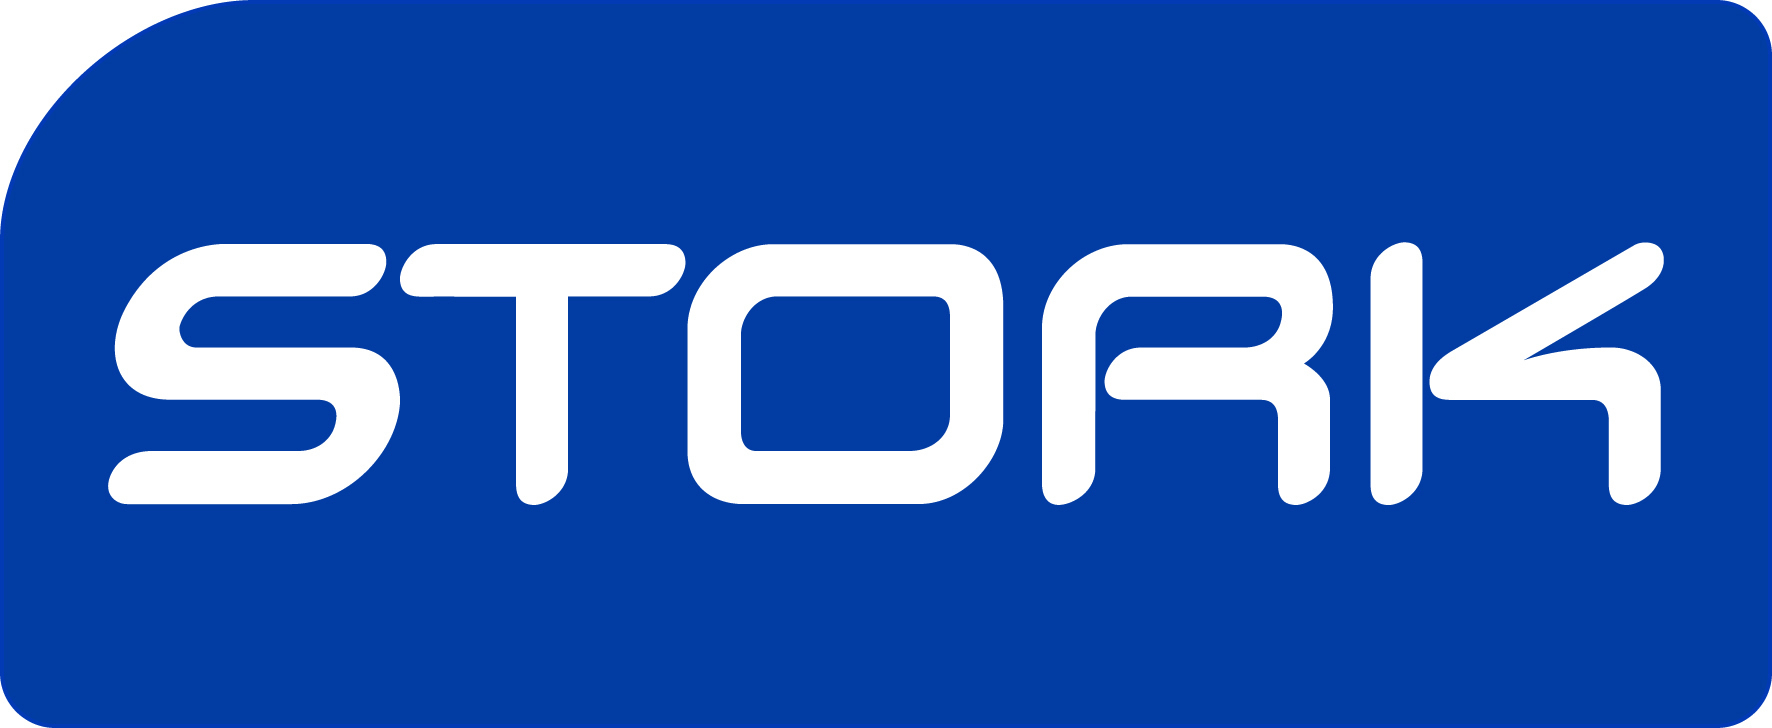 logo's